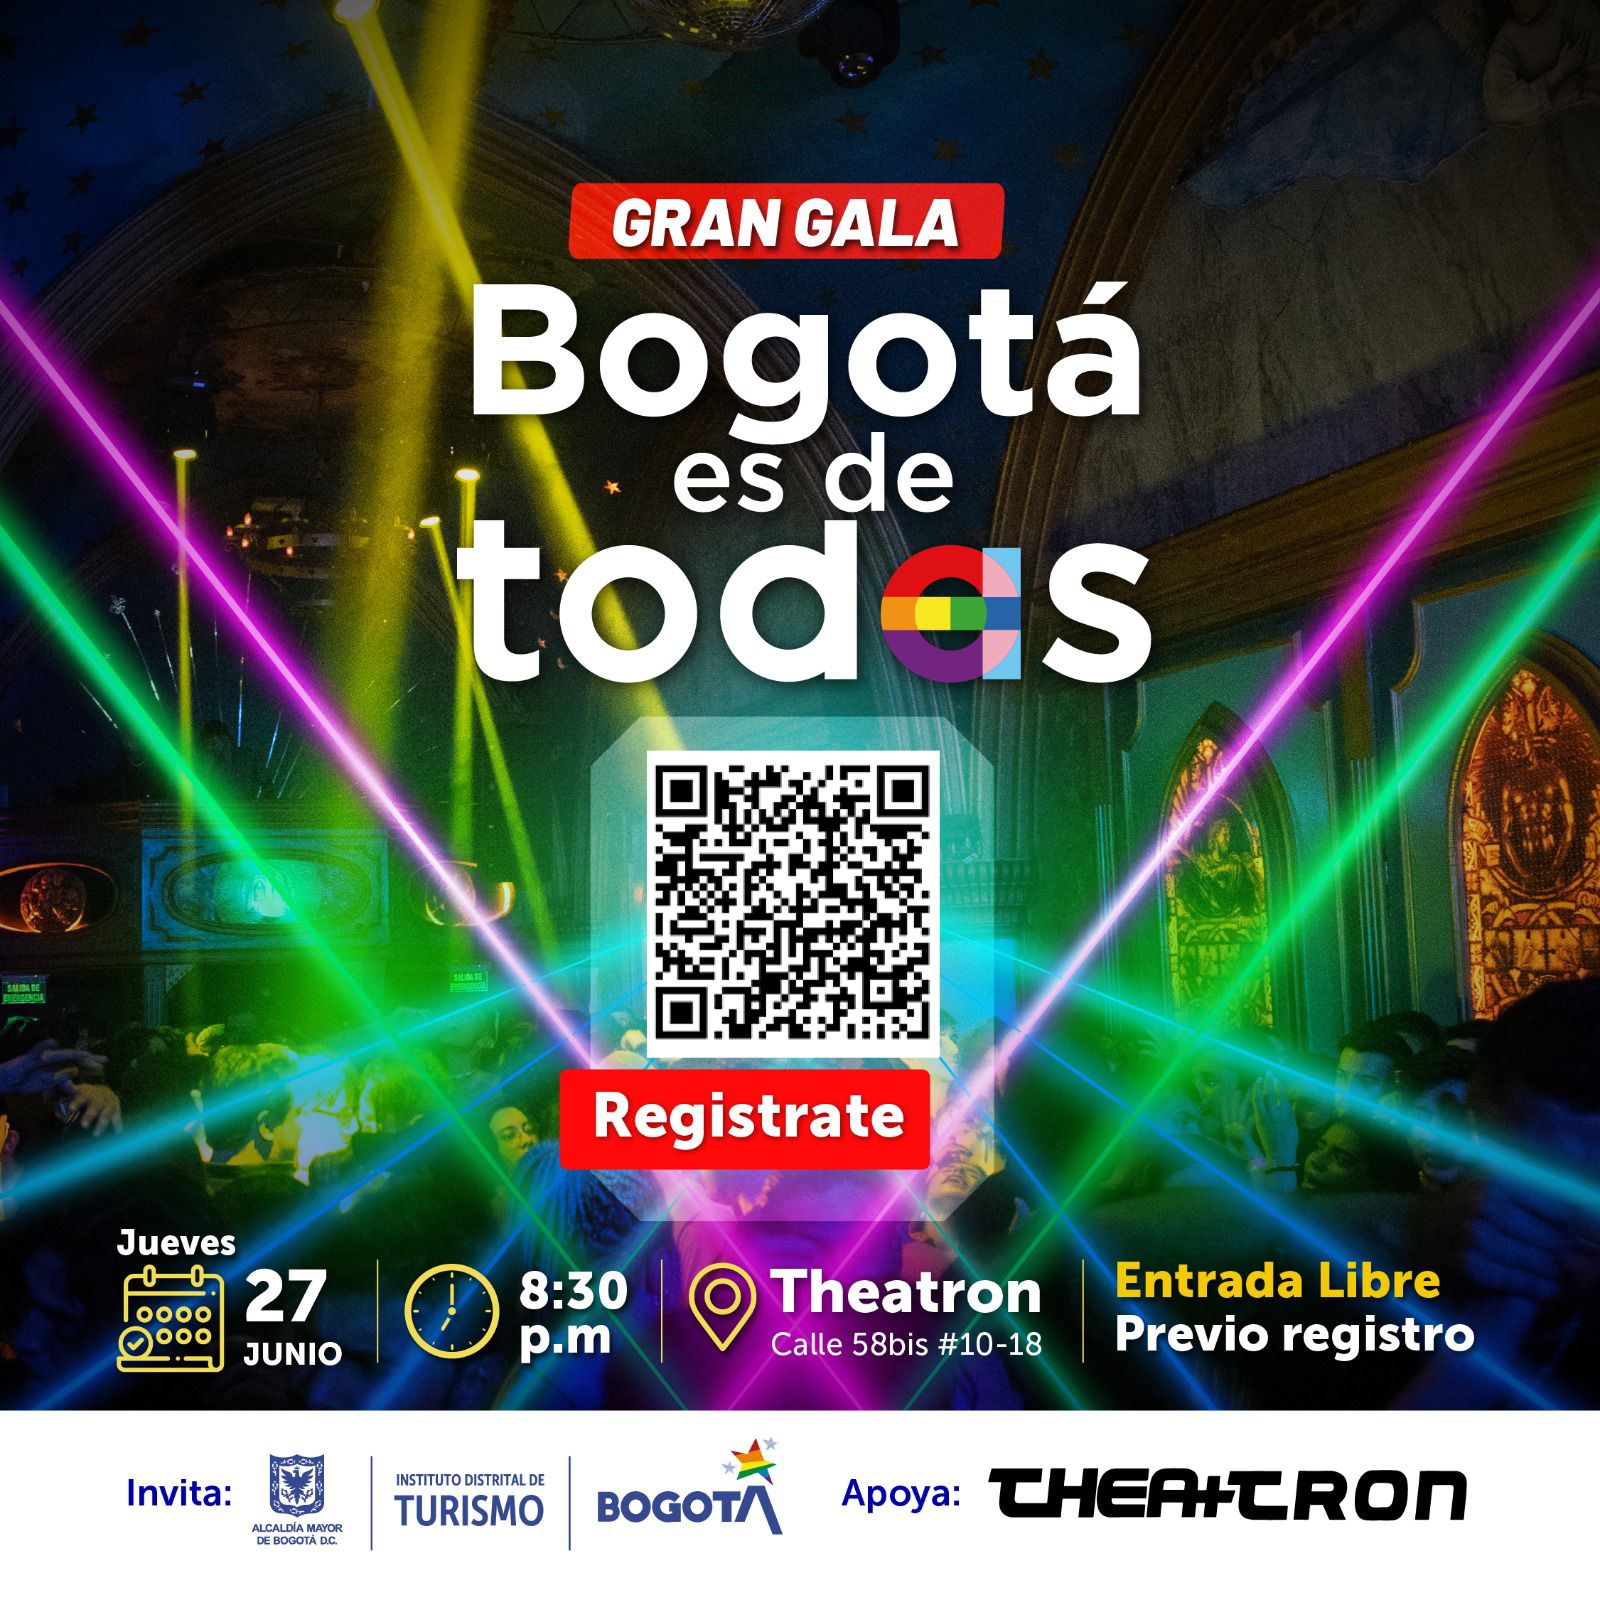 Gran Gala Bogotá es de todes